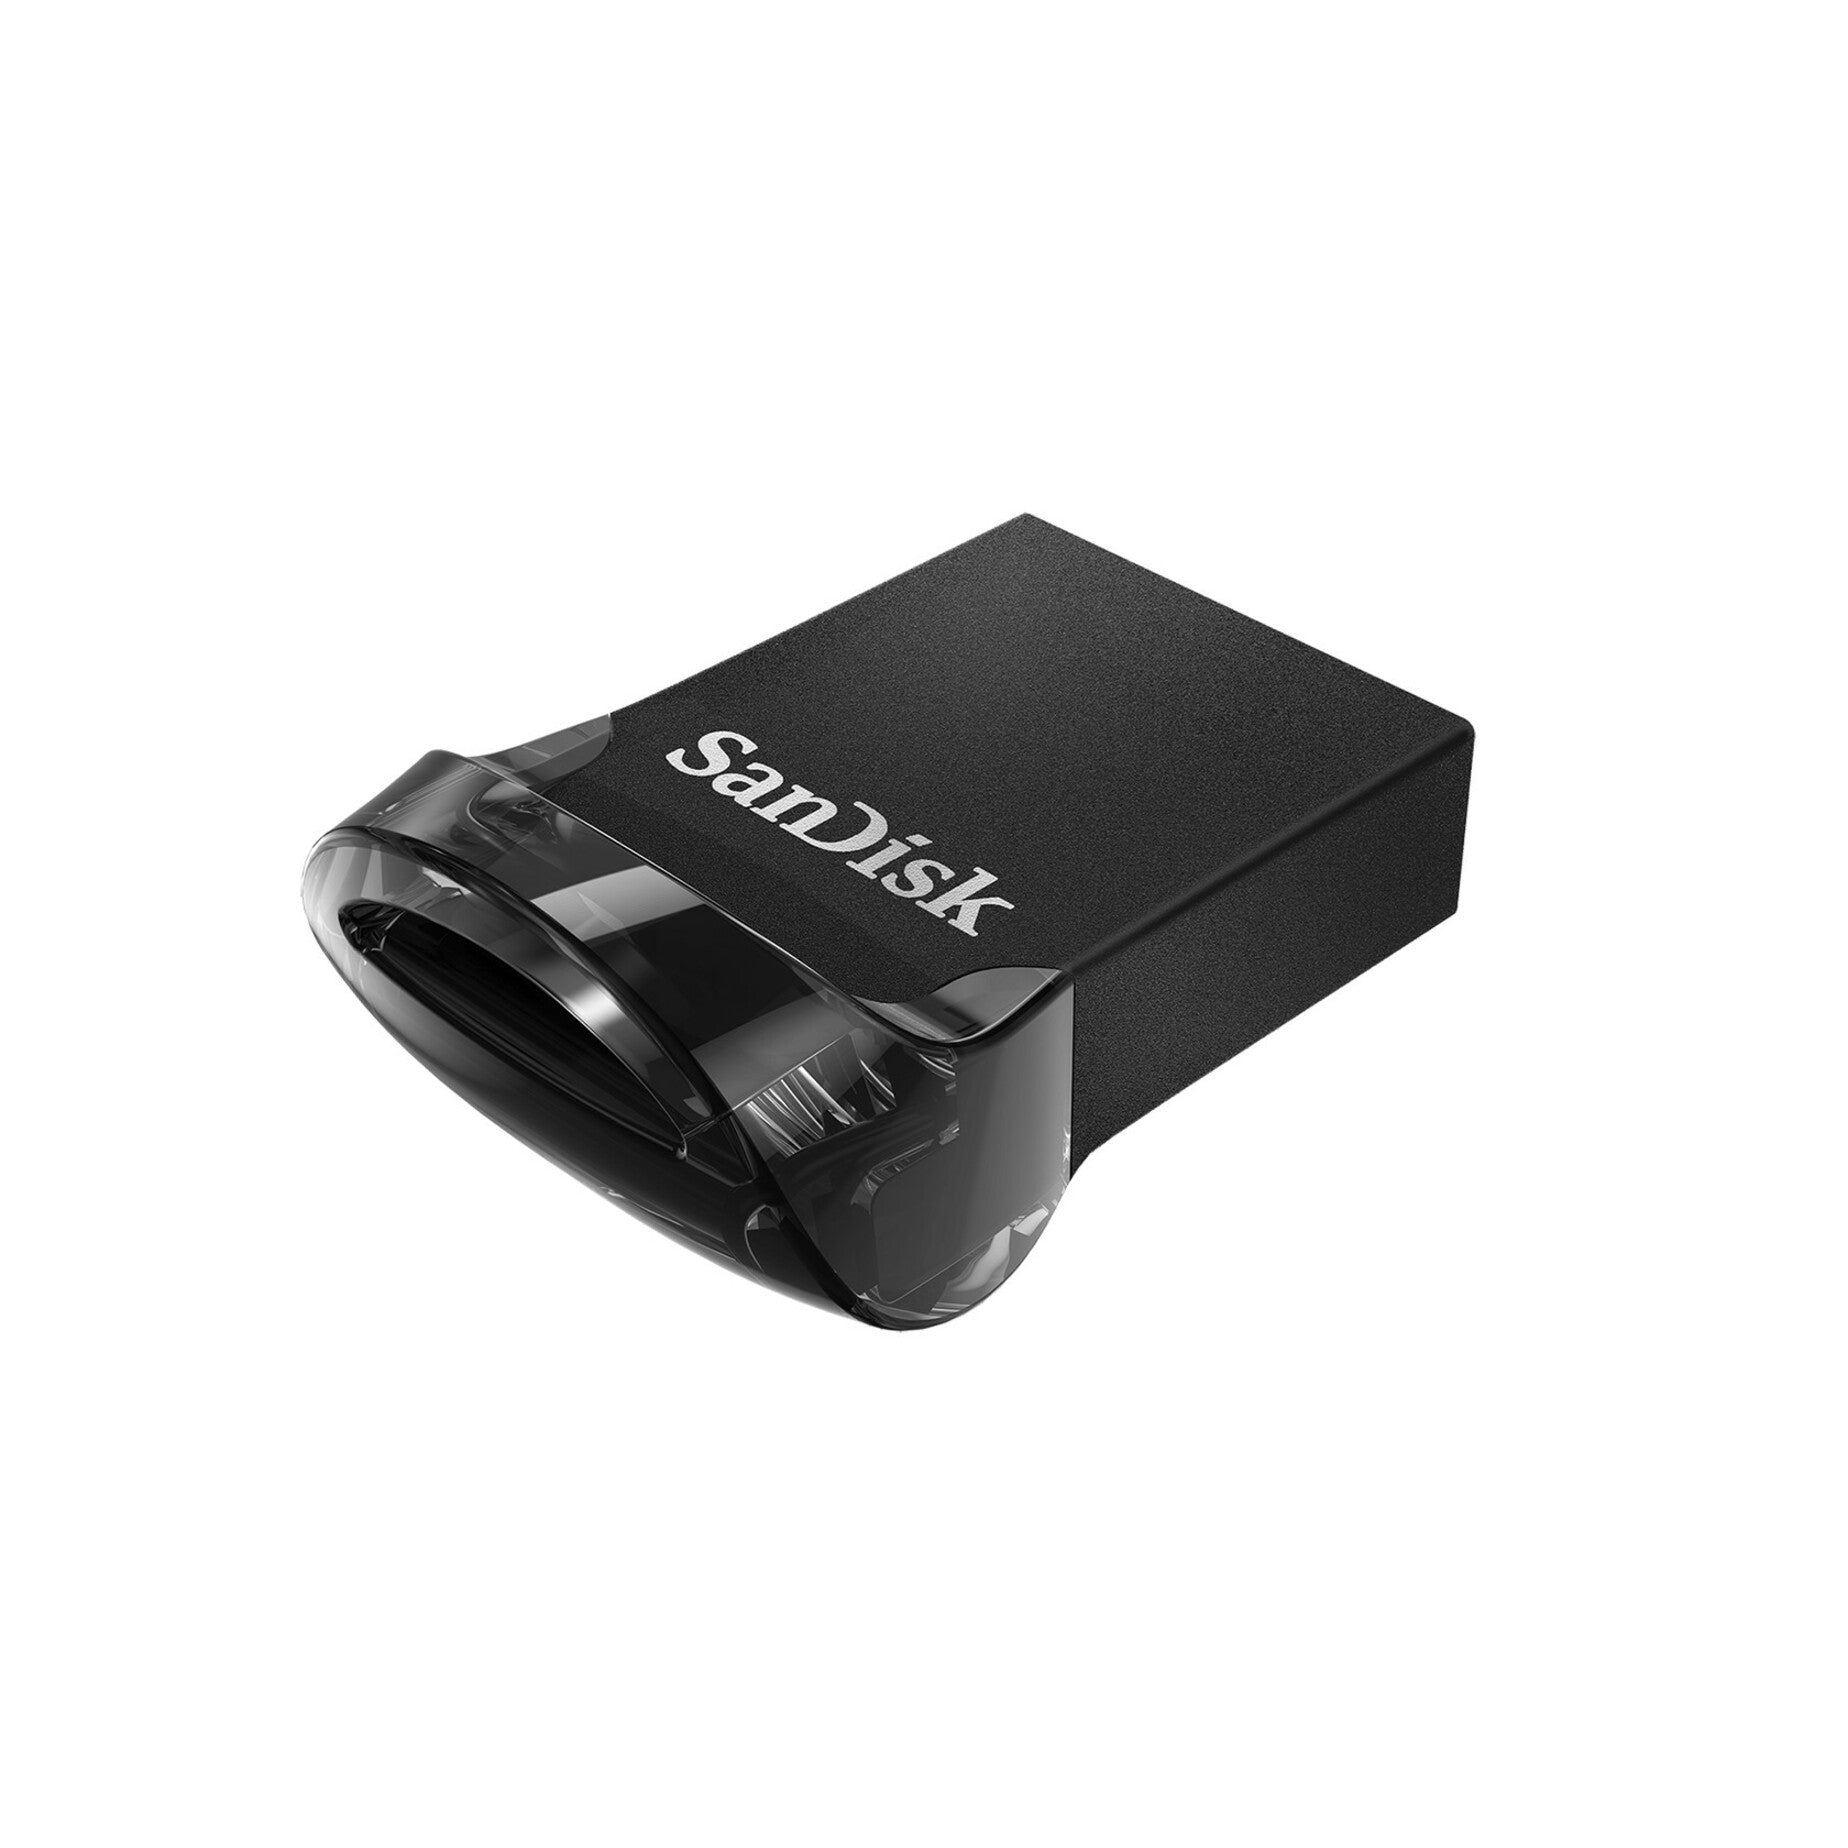 SanDisk SDCZ430-128G-A46 Ultra Fit USB 3.1 Flash Drive 128GB High-Speed Data Transfer and Compact Design  SanDisk SDCZ430-128G-A46 Ultra Fit Clé USB 3.1 Flash 128 Go Transfert de données à haute vitesse et design compact